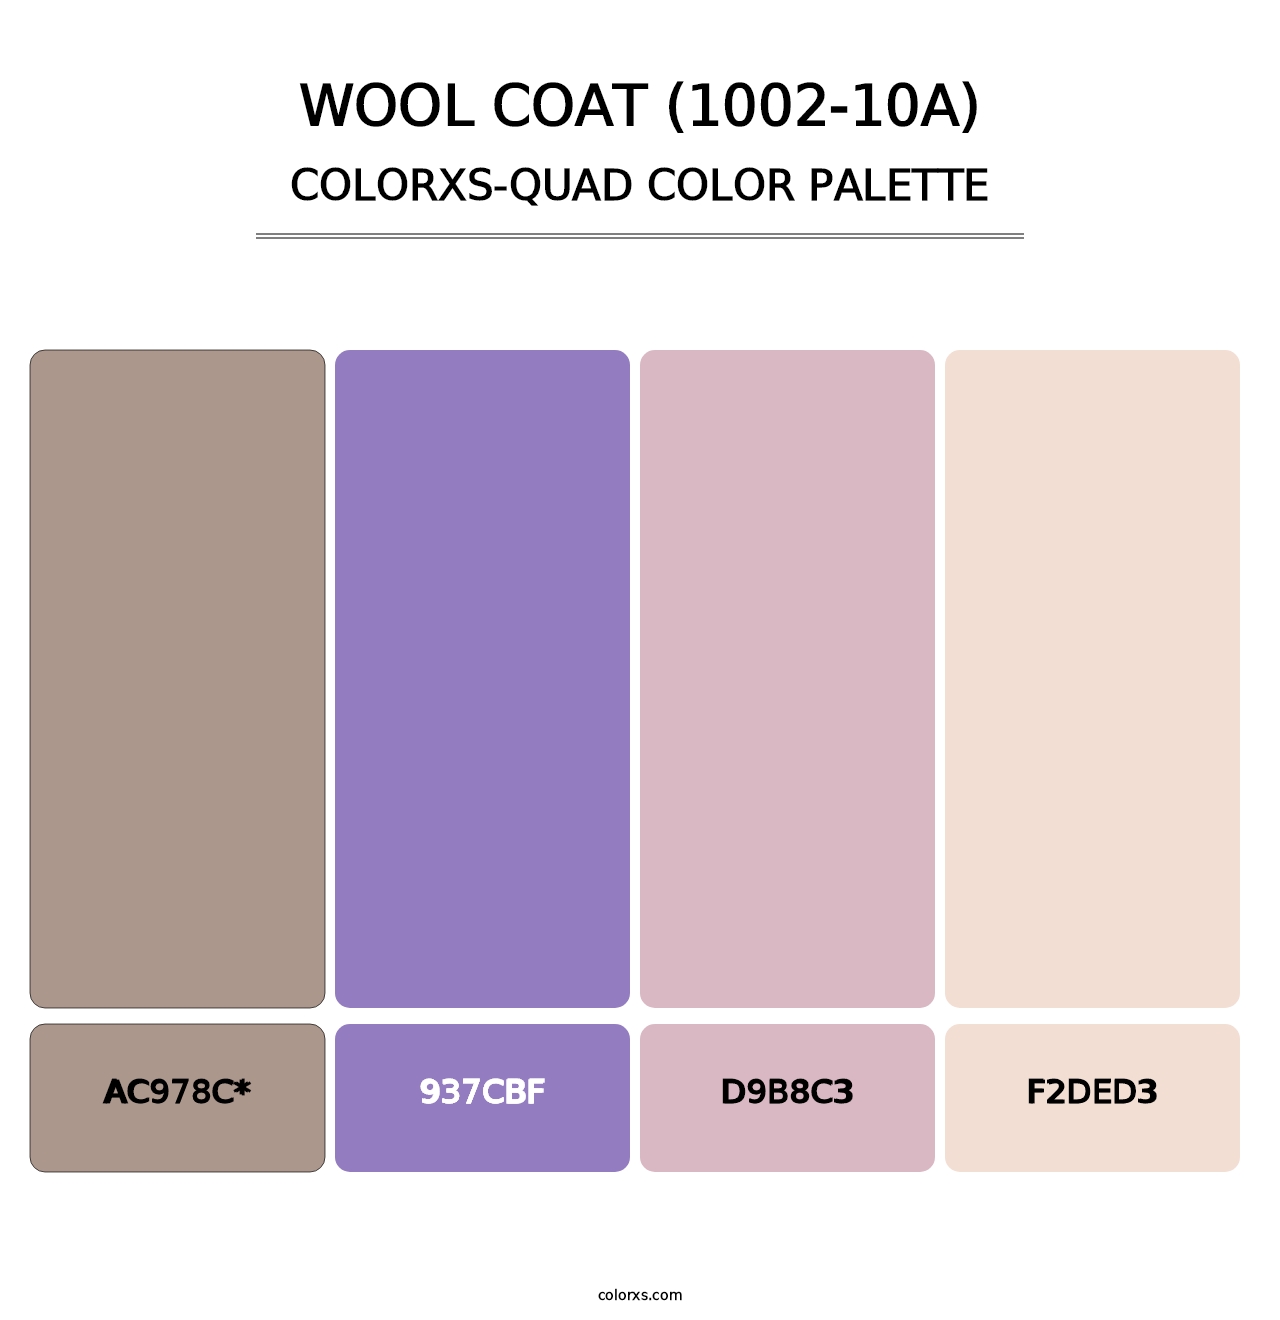 Wool Coat (1002-10A) - Colorxs Quad Palette